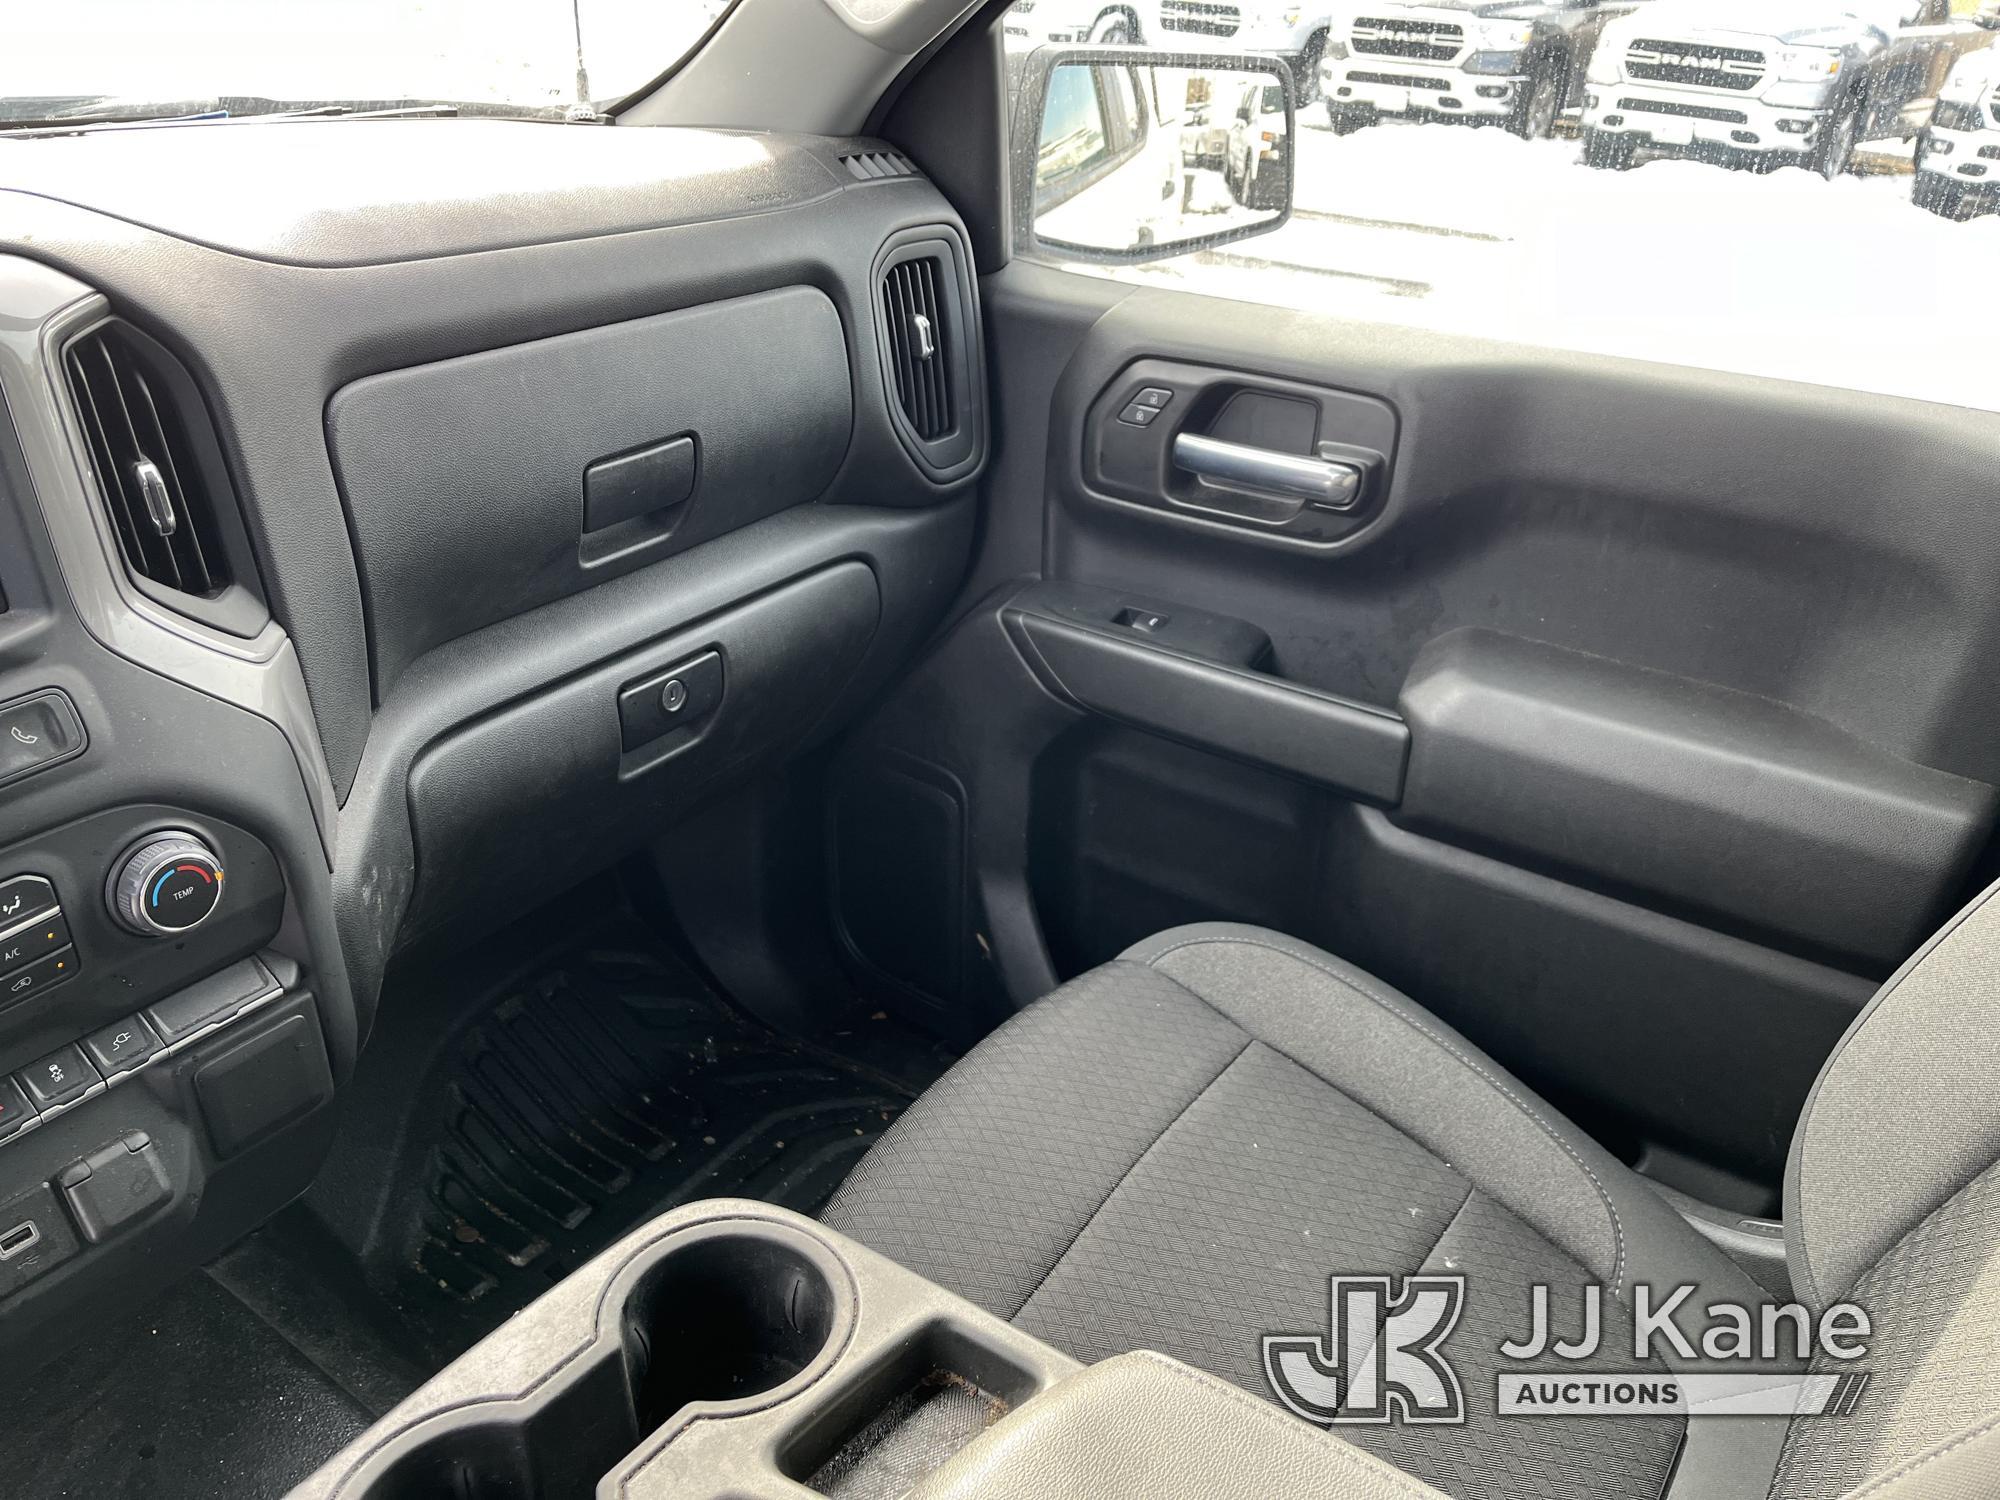 (Kings Park, NY) 2021 Chevrolet Silverado 1500 4x4 Extended-Cab Pickup Truck Runs & Moves, Body Dama